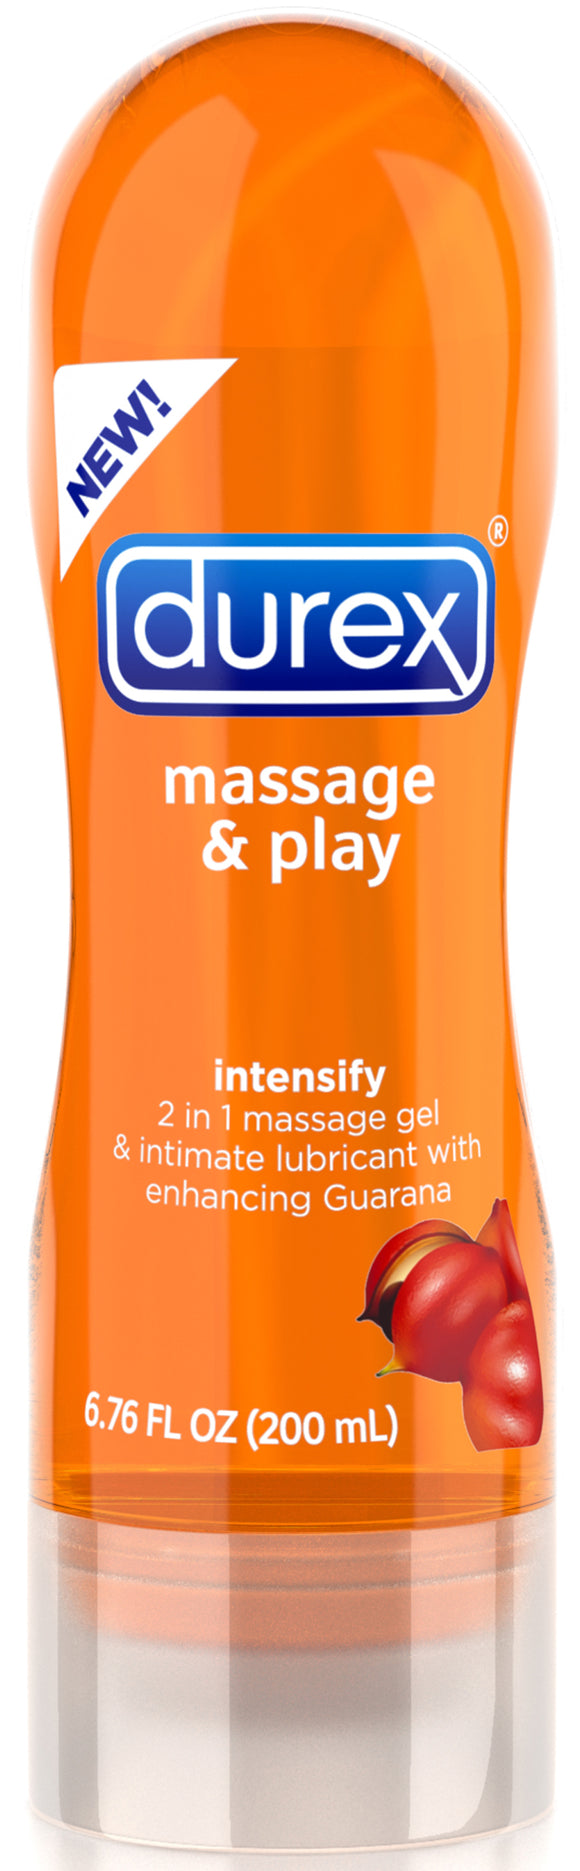 Durex Massage & Play 2 in 1 Intensify Guarana - 6.76 Fl. Oz. / 200 ml PM87639